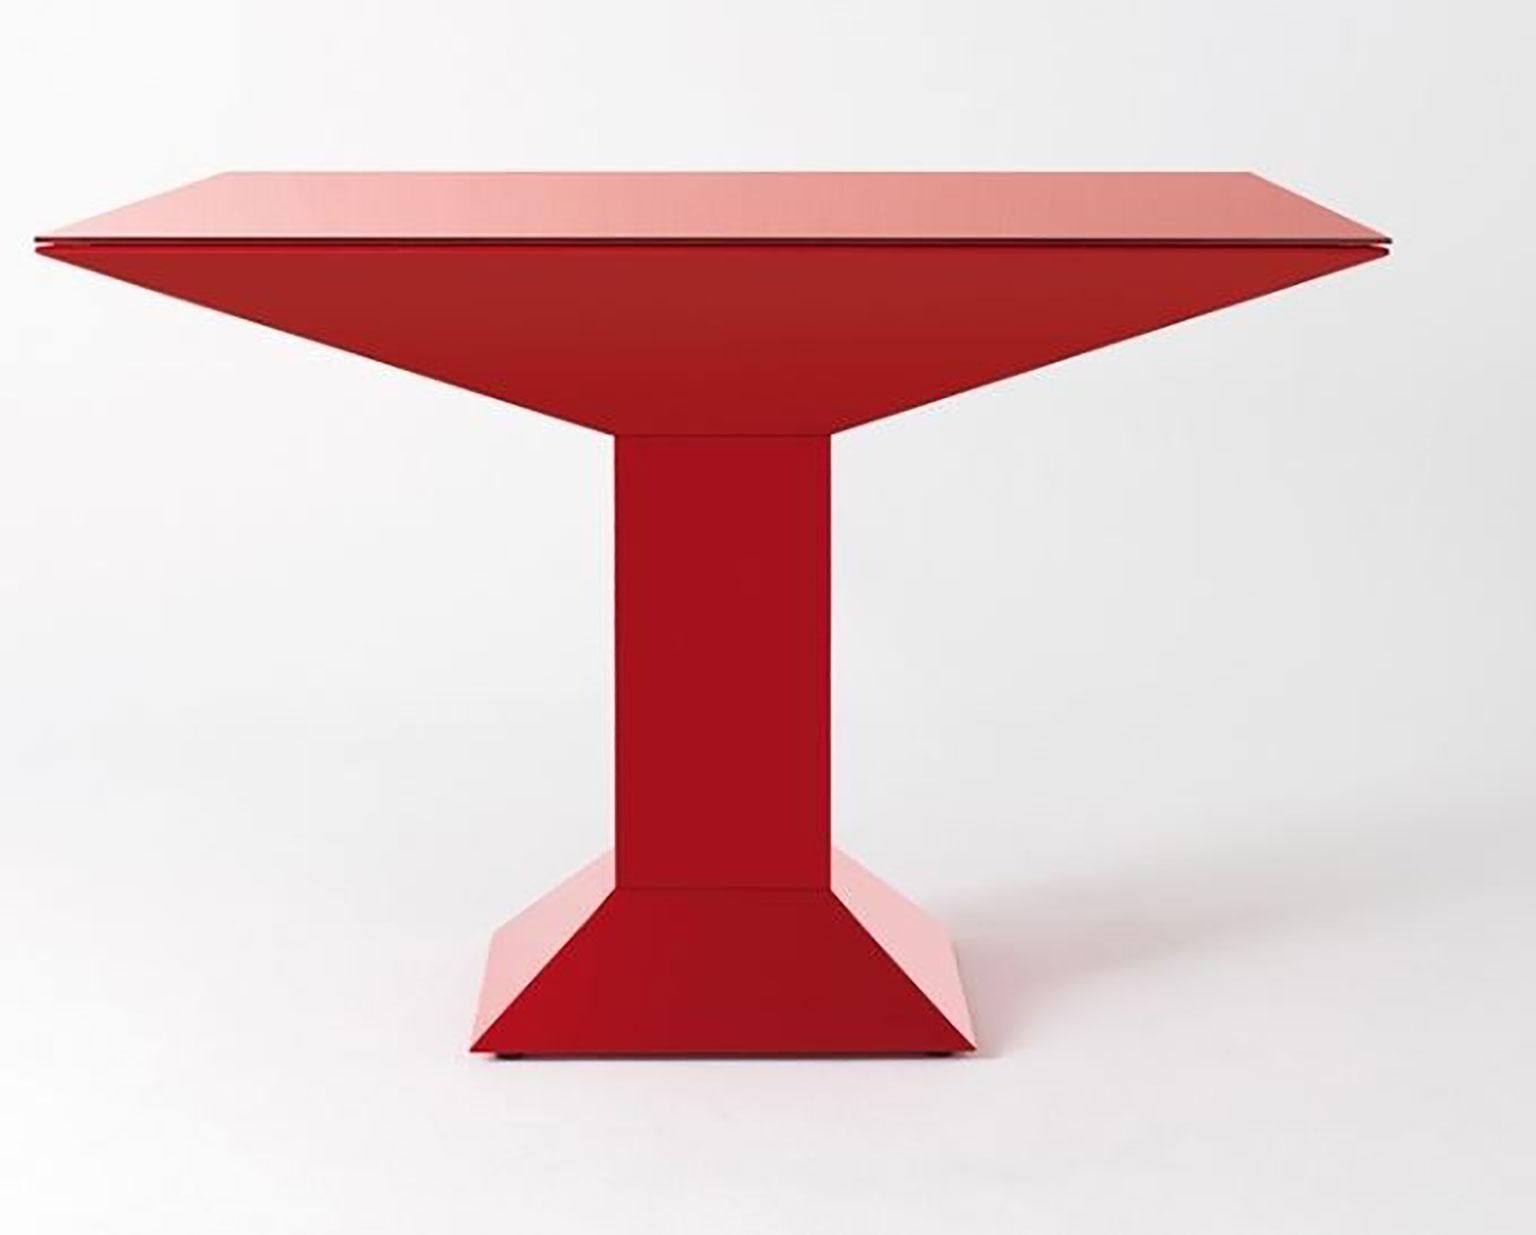 Der Tisch Metsass wurde von Ettore Sottsass Jr. für BD Barcelona entworfen. Die Struktur besteht aus flachen, rot lackierten Stahlblechen. Die Glasplatte ist in der gleichen Farbe wie der Sockel lackiert. In den 1970er Jahren schuf Sottsass